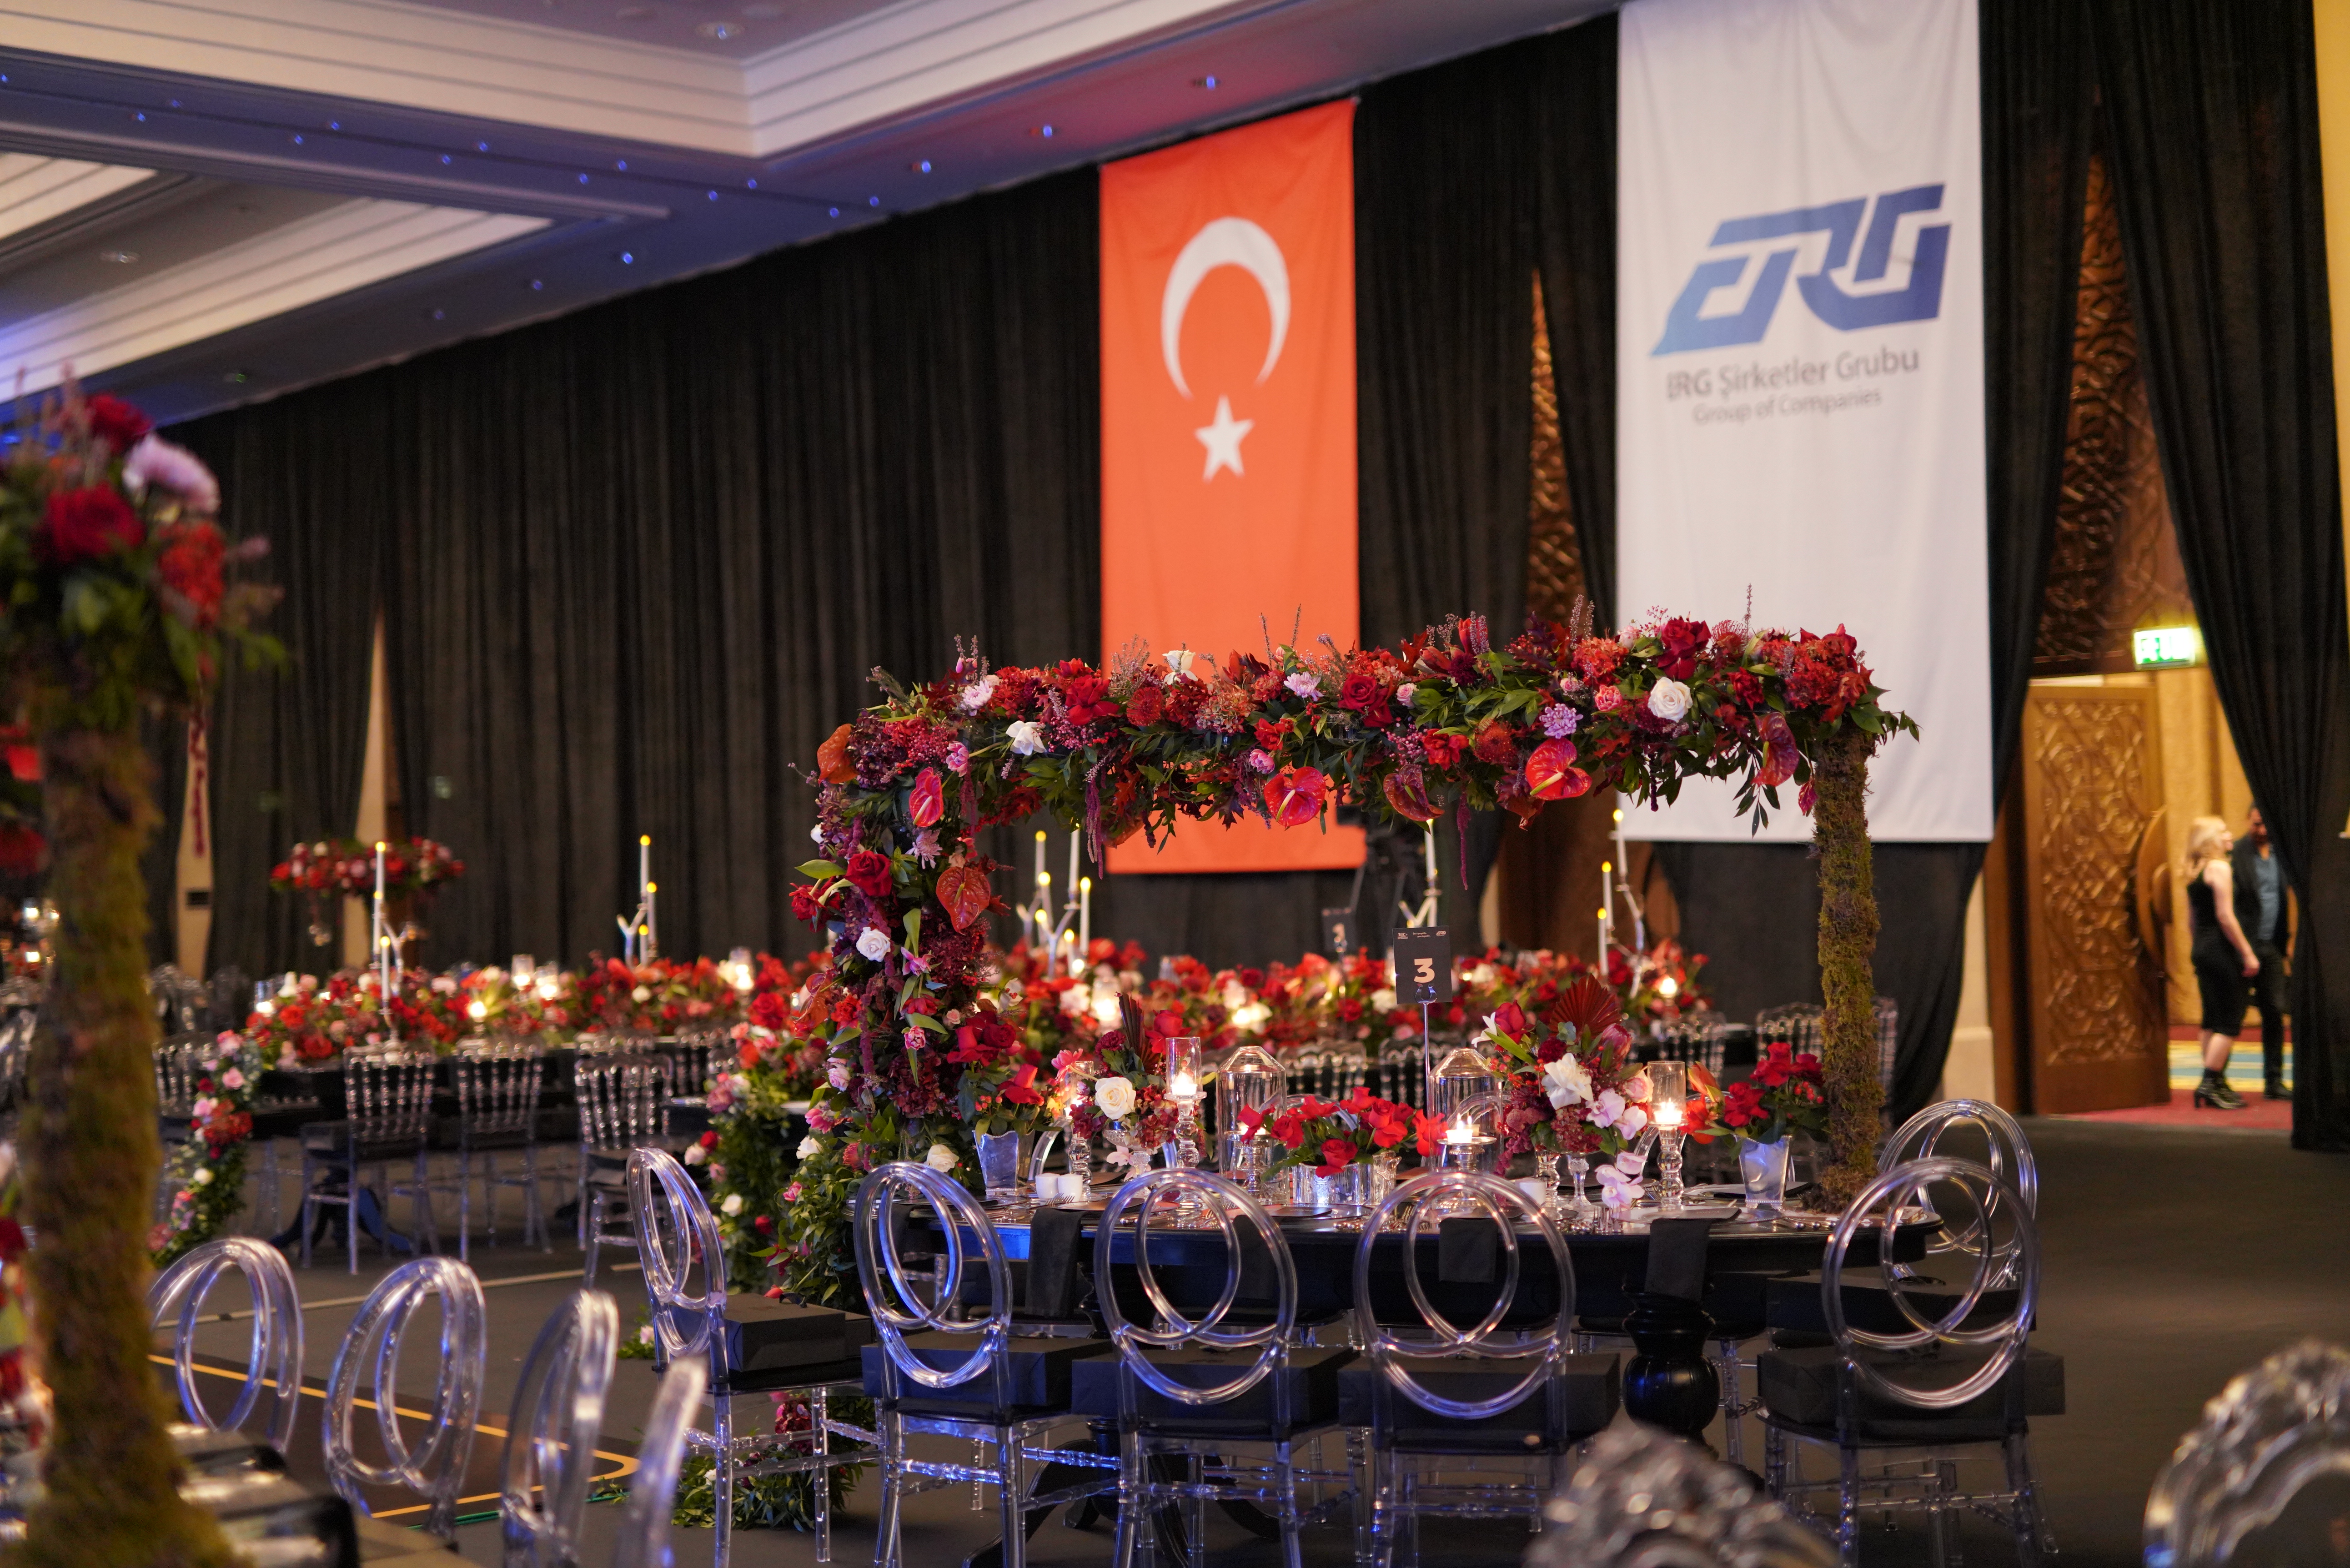 ERG Şirketle Grubu, MKE Ankaragücü ile birlikte Cumhuriyetin 100. yılını kutladı